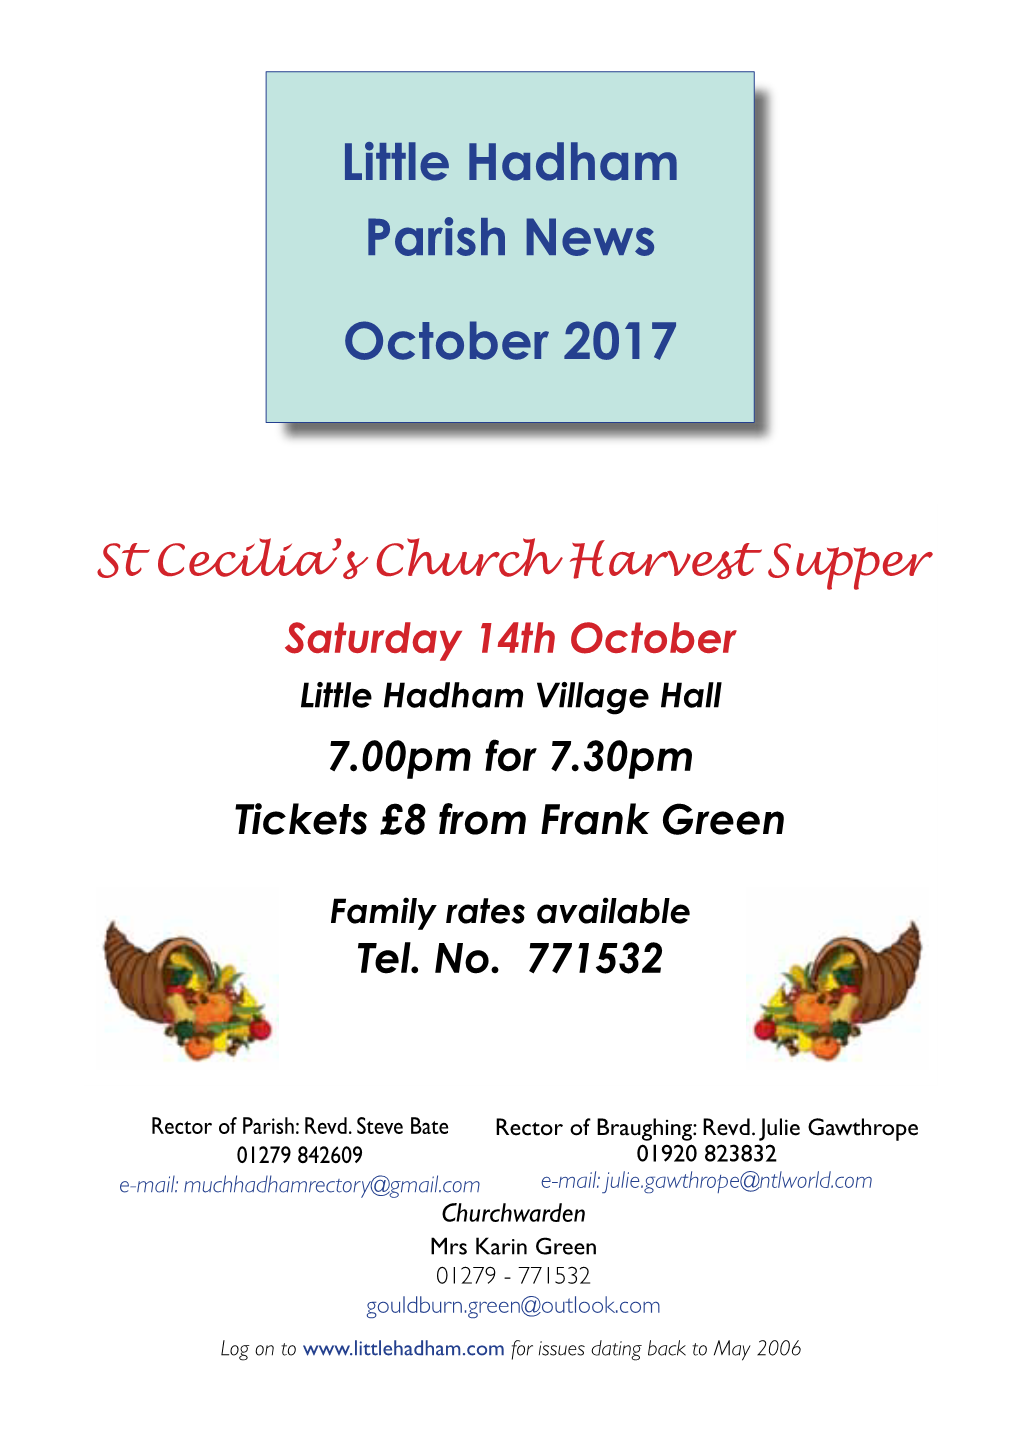 Little Hadham Parish News October 2017